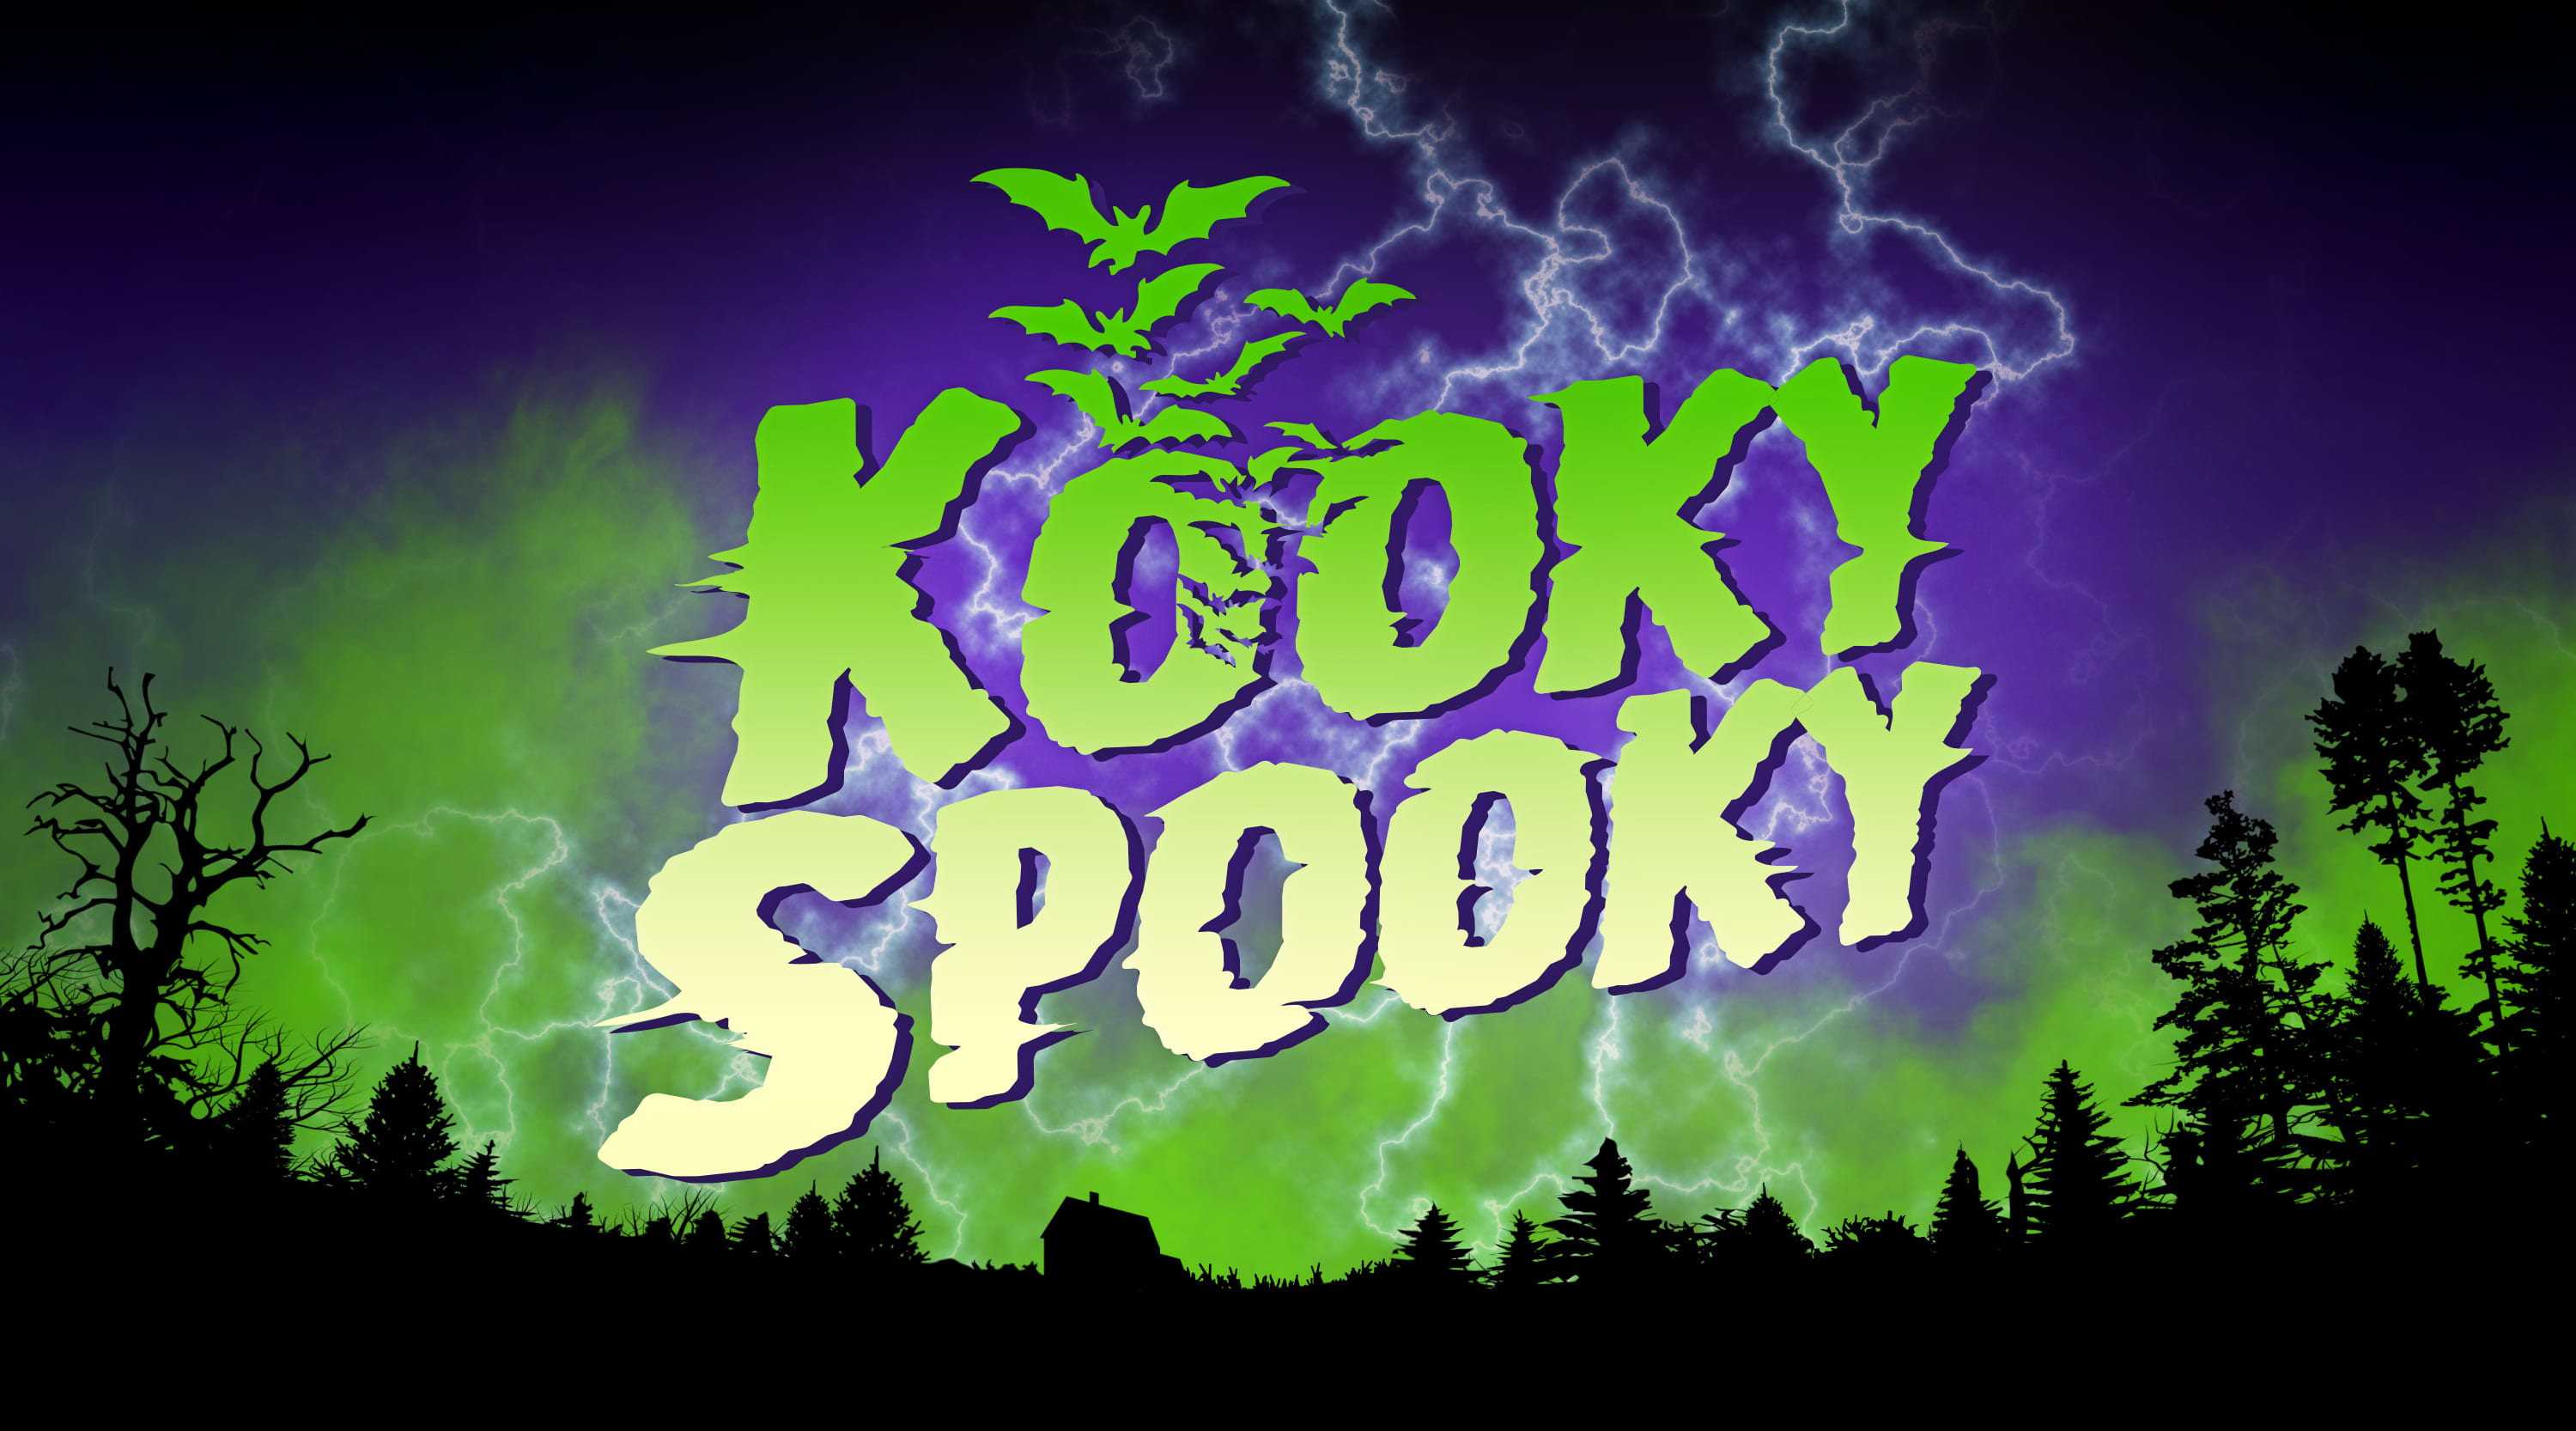 Kooky Spooky